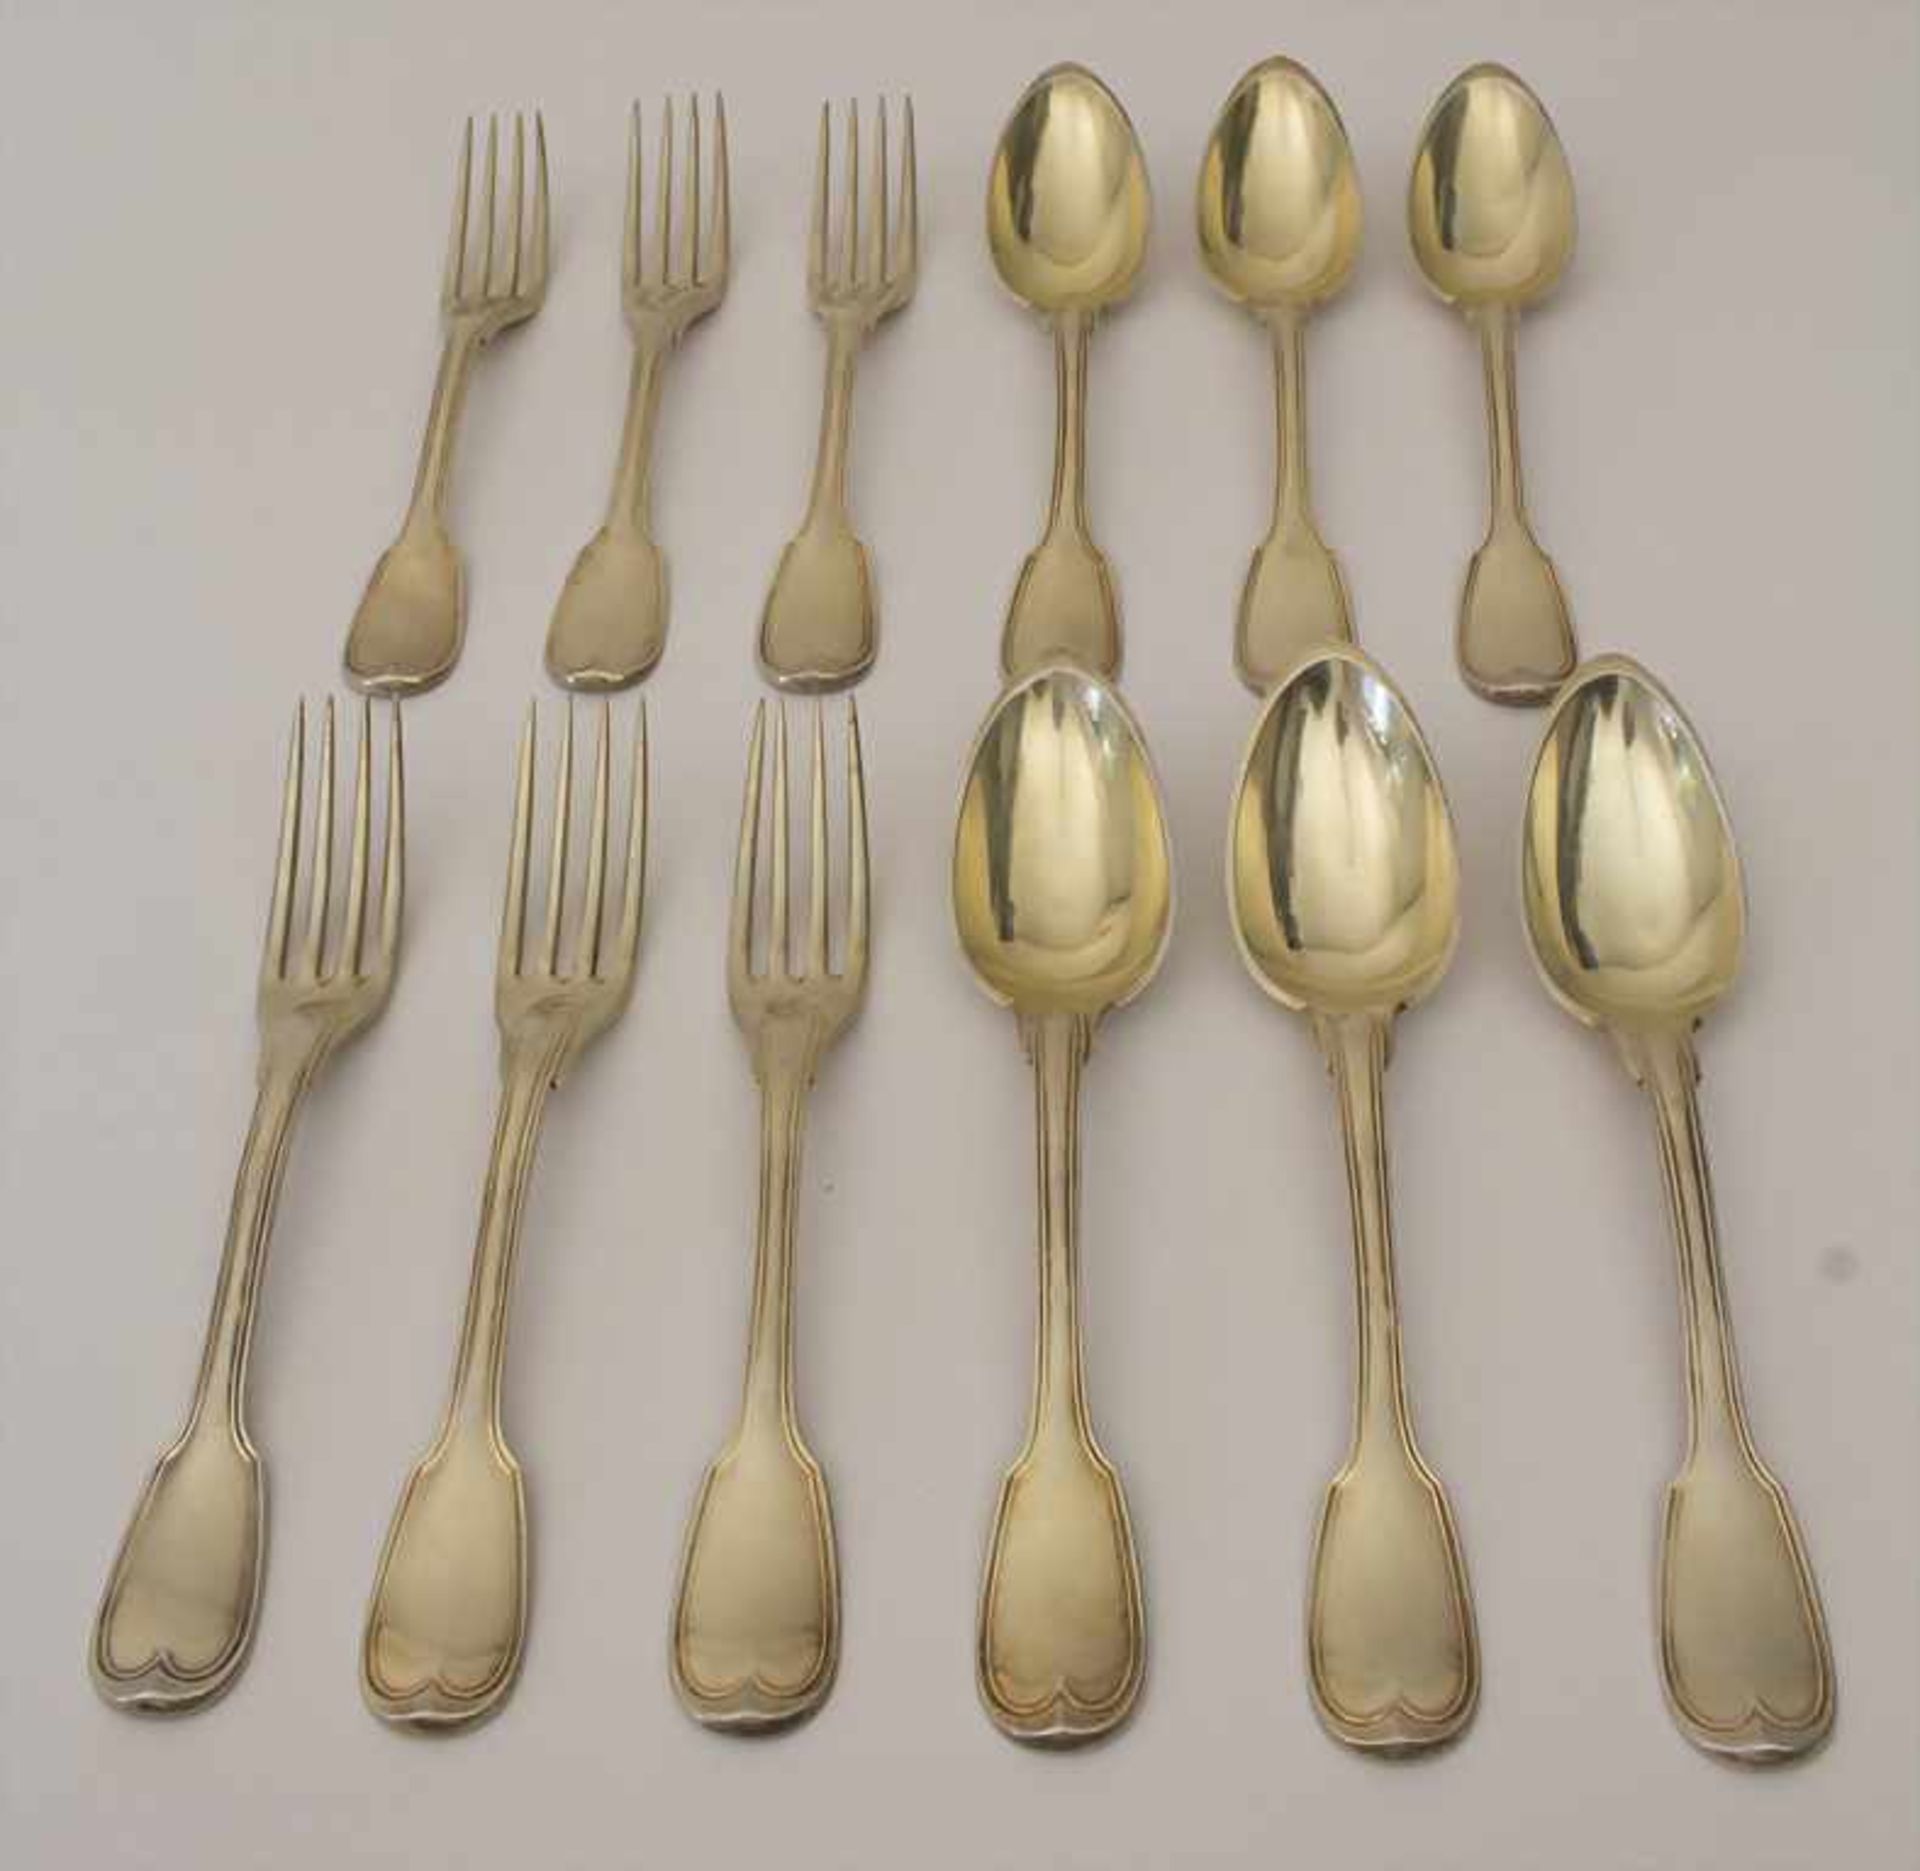 Silberbesteck für 6 Personen / 12 pieces of silver flatware, Paris, 1798-1809Material: Silber 950/ - Bild 8 aus 8